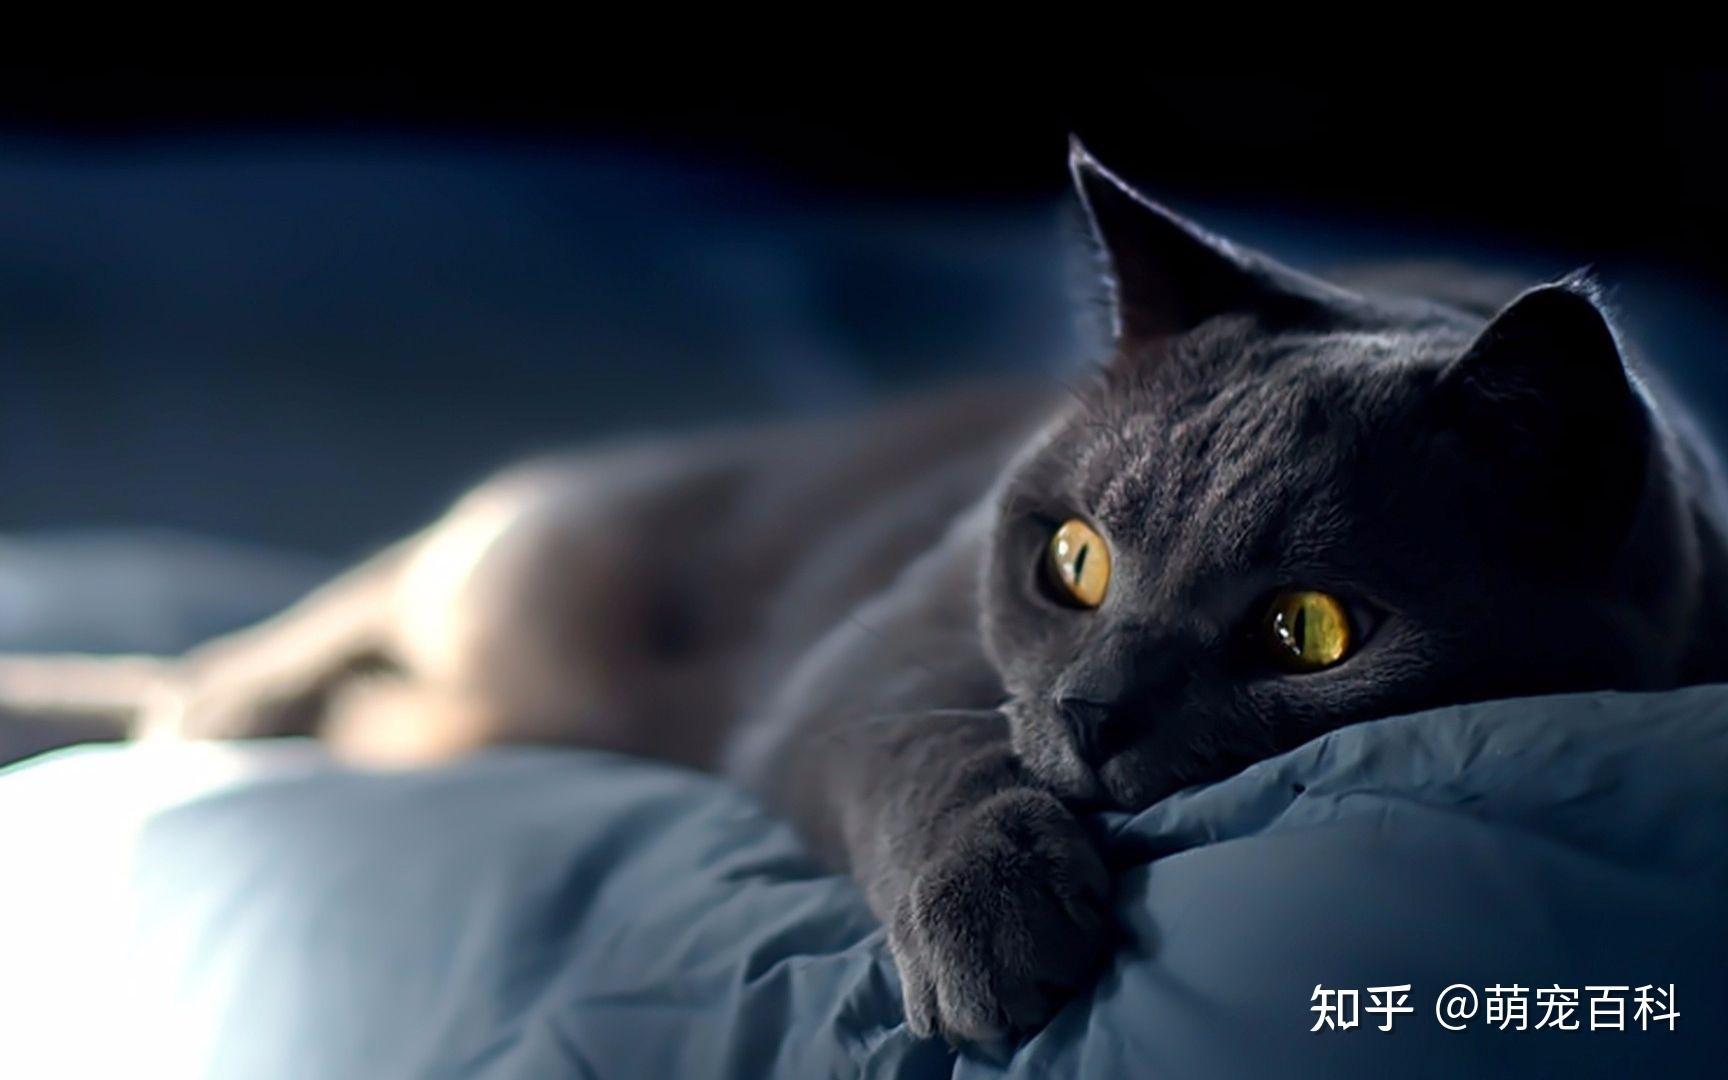 晚上猫的眼睛图片-图库-五毛网